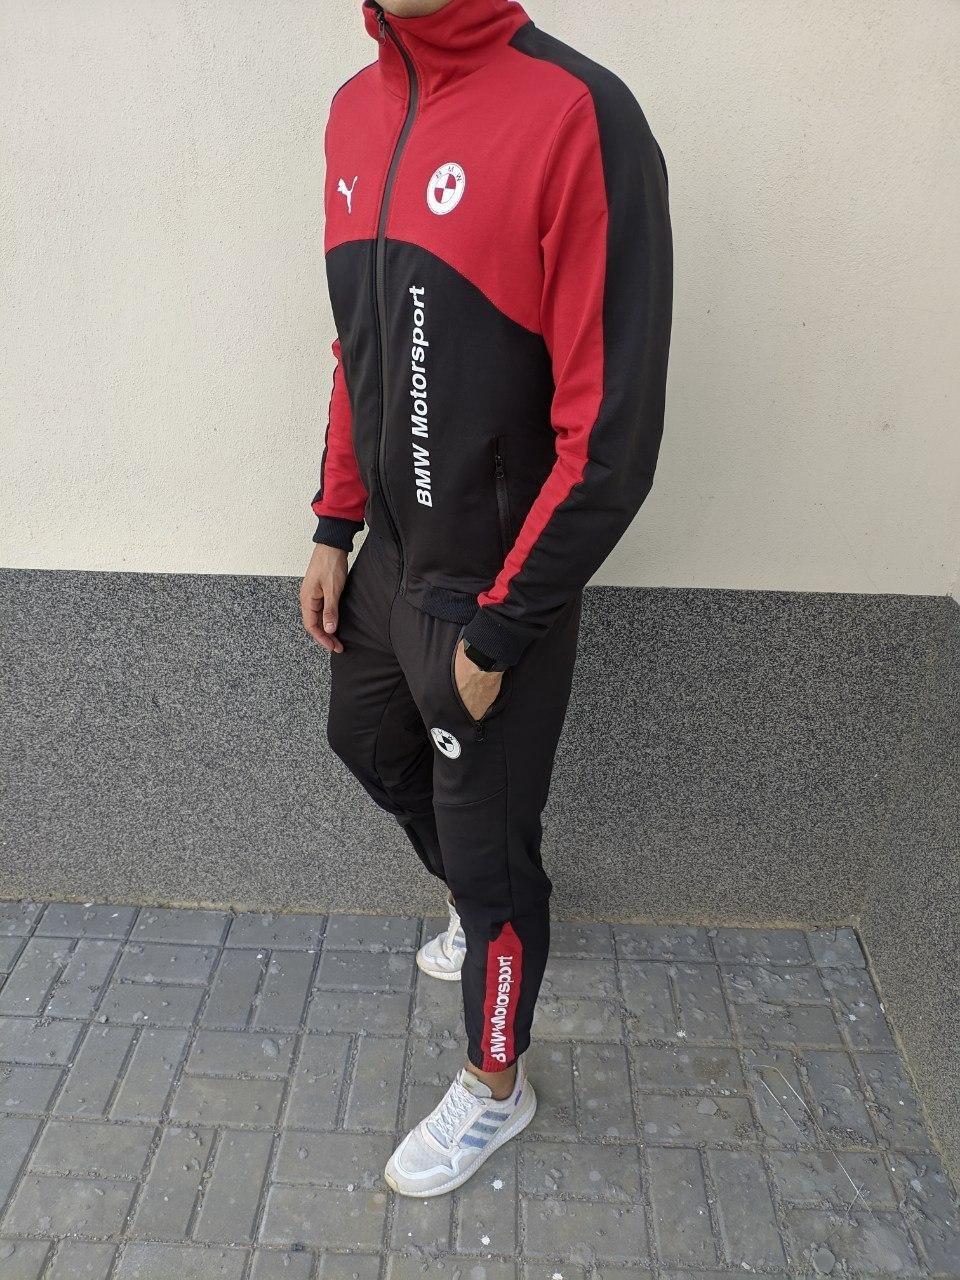 Спортивный костюм Puma BMW Motorsport черно-красный мужской осенний де: 1  427 грн. - Спортивні костюми Київ на BESPLATKA.ua 88592596